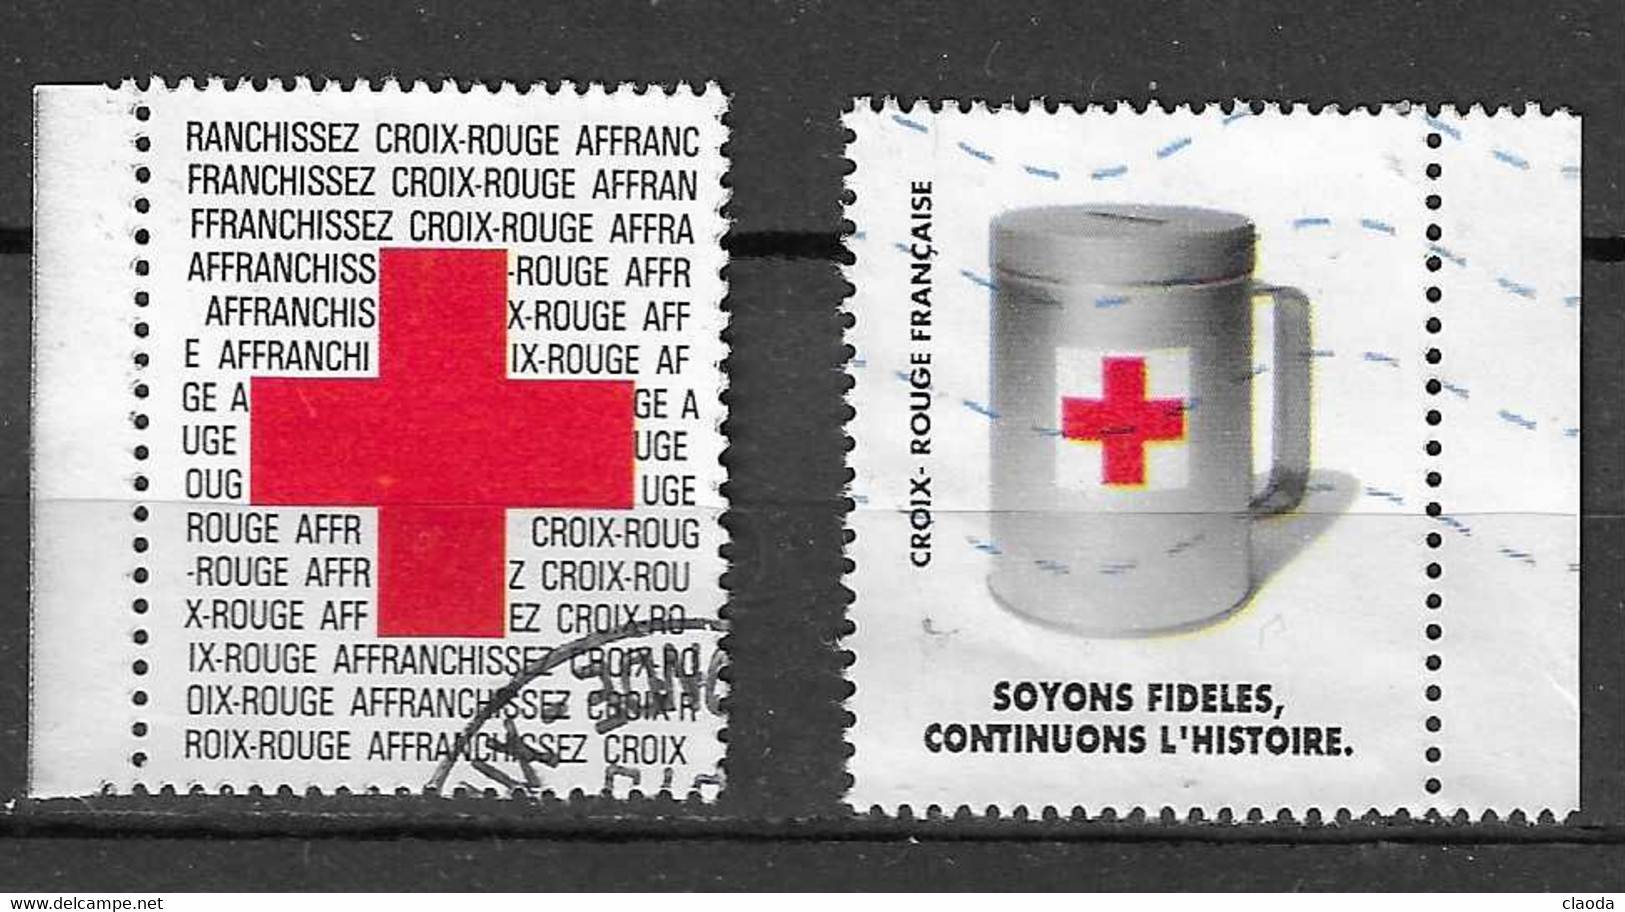 VM 23 - Vignettes CROIX ROUGE ( Carnets De Timbres FRANCE (1988 Et 1992) - Croix Rouge